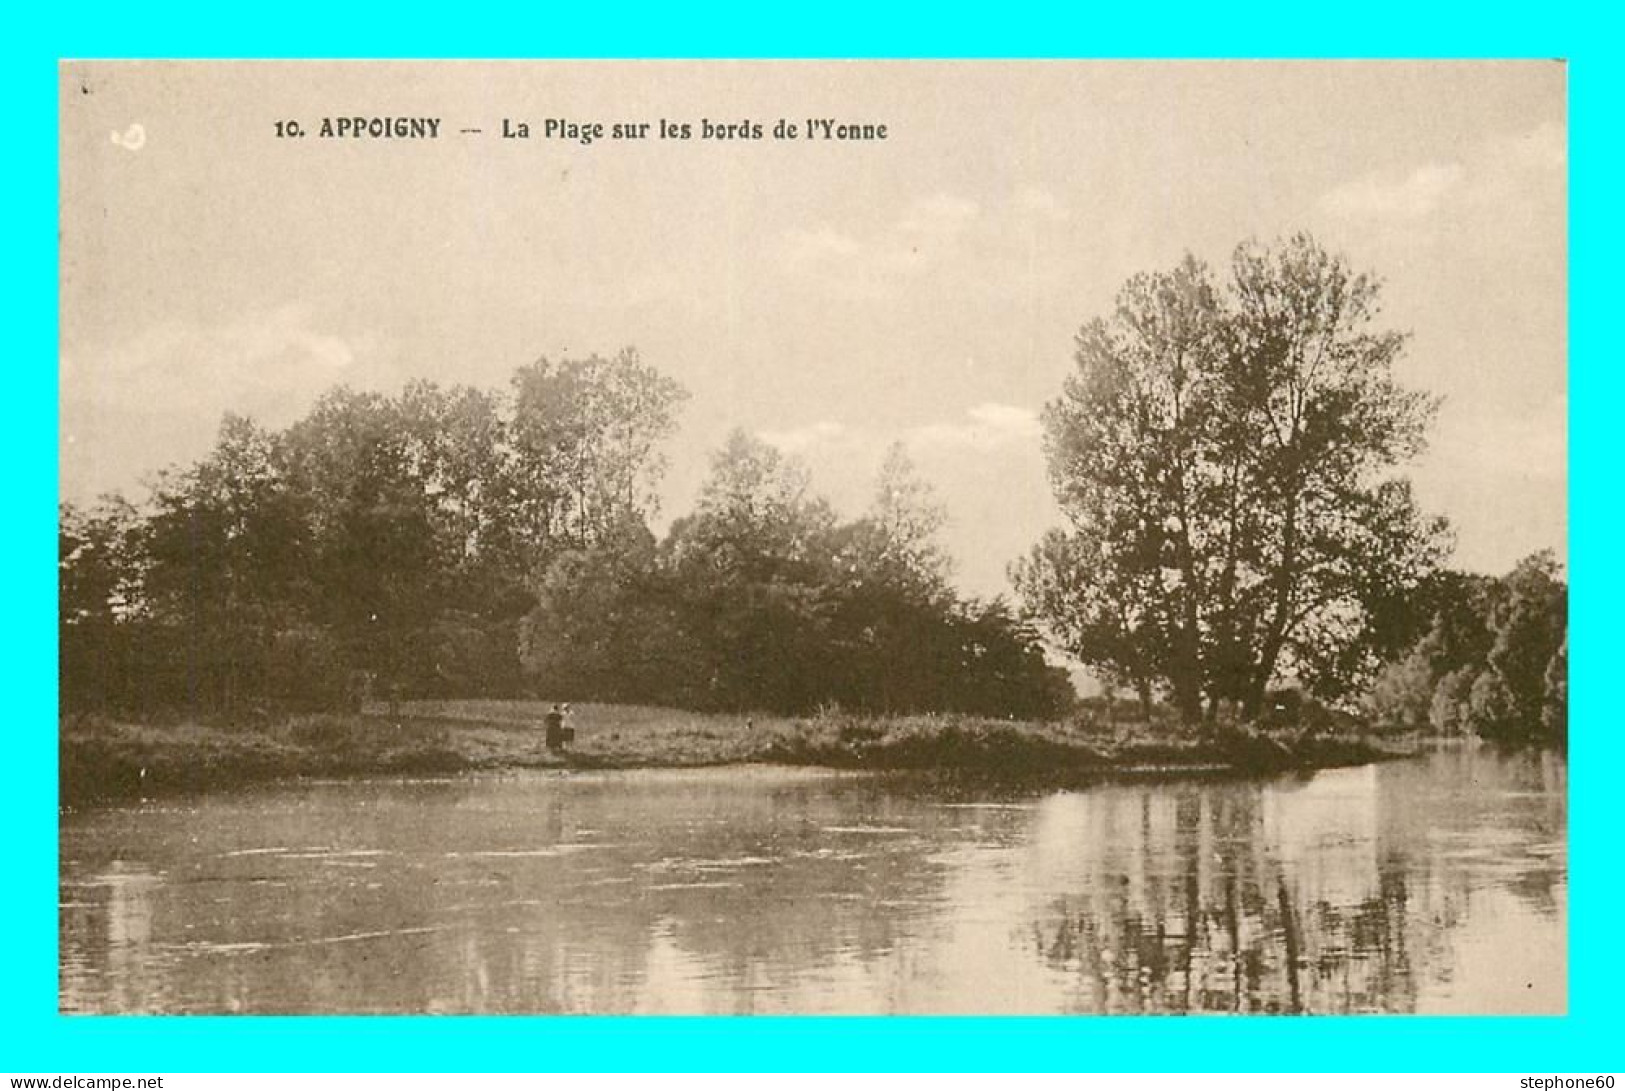 A828 / 229 89 - APPOIGNY Plage Sur Les Bords De L'Yonne - Appoigny